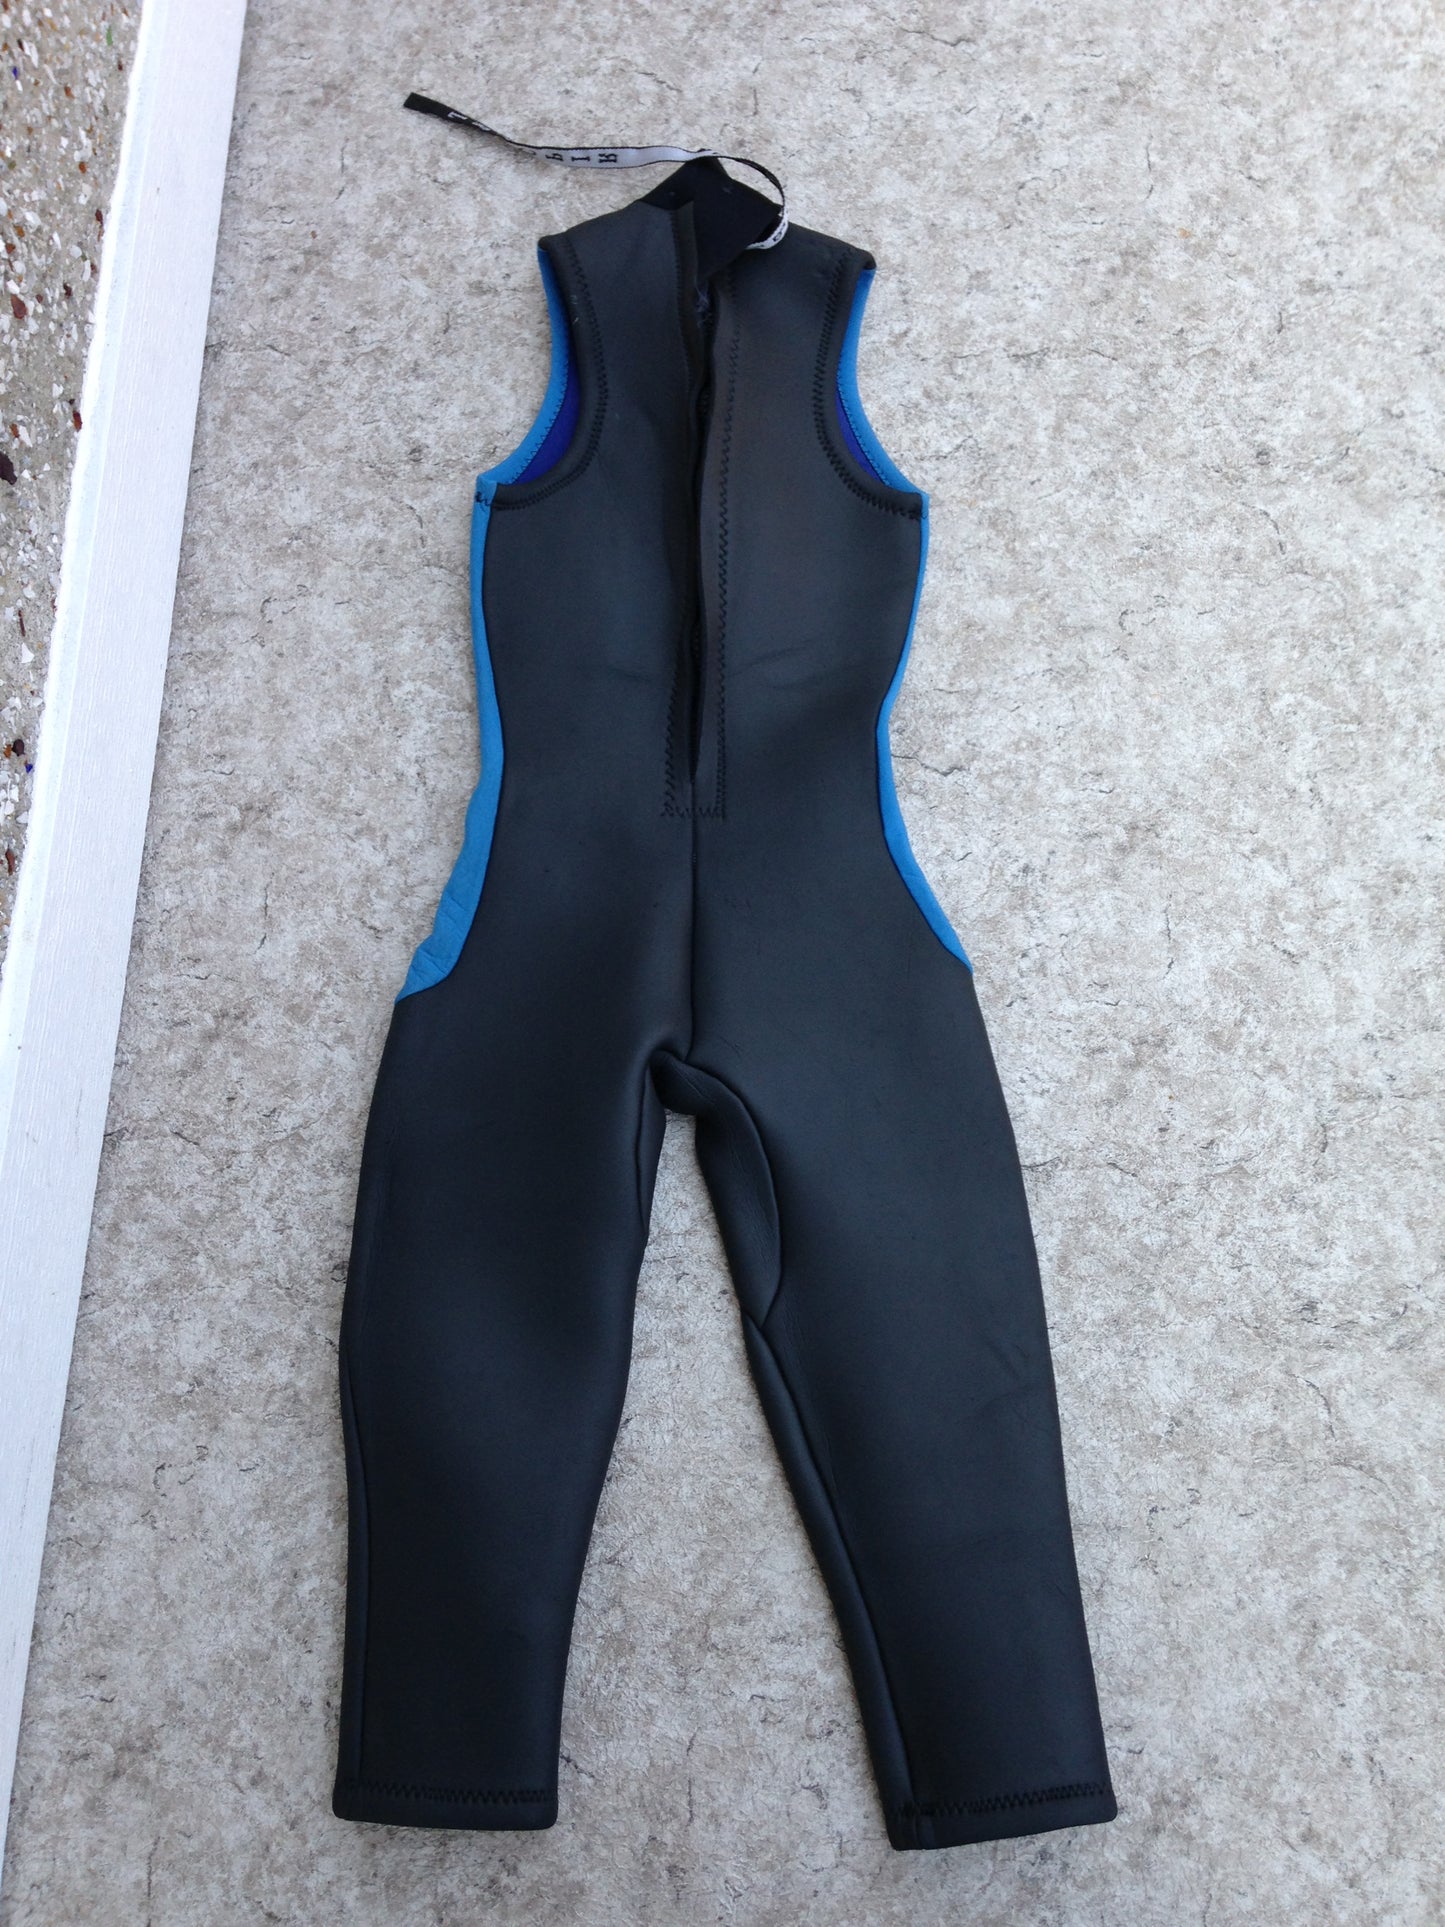 Wetsuit Ladies Size 5-6 Full Rip Curl Surf 4-5 mm Neoprene Black